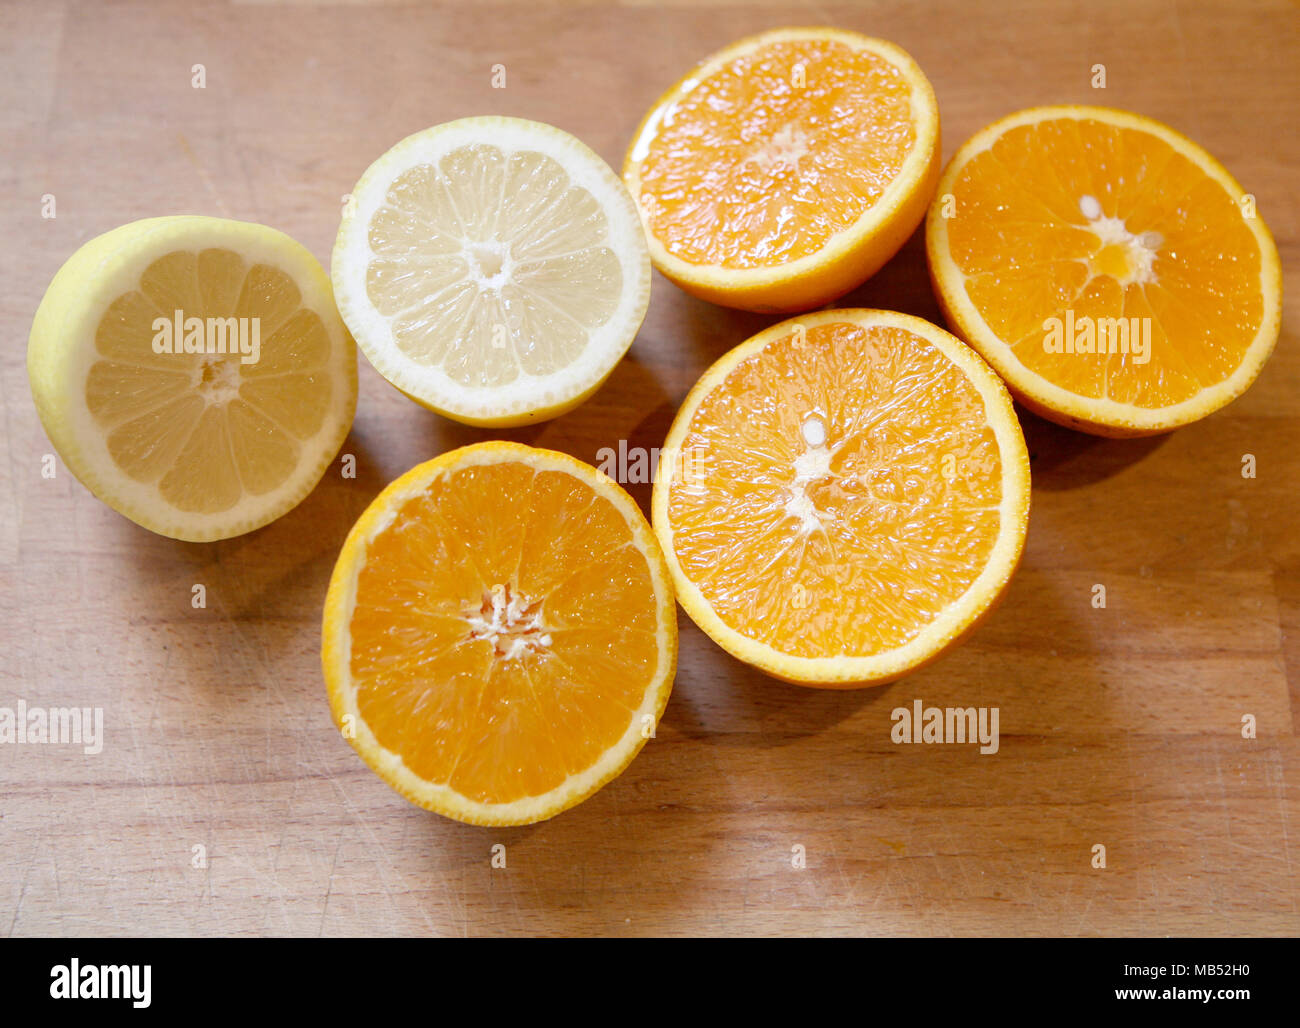 Oranges and lemons Stock Photo